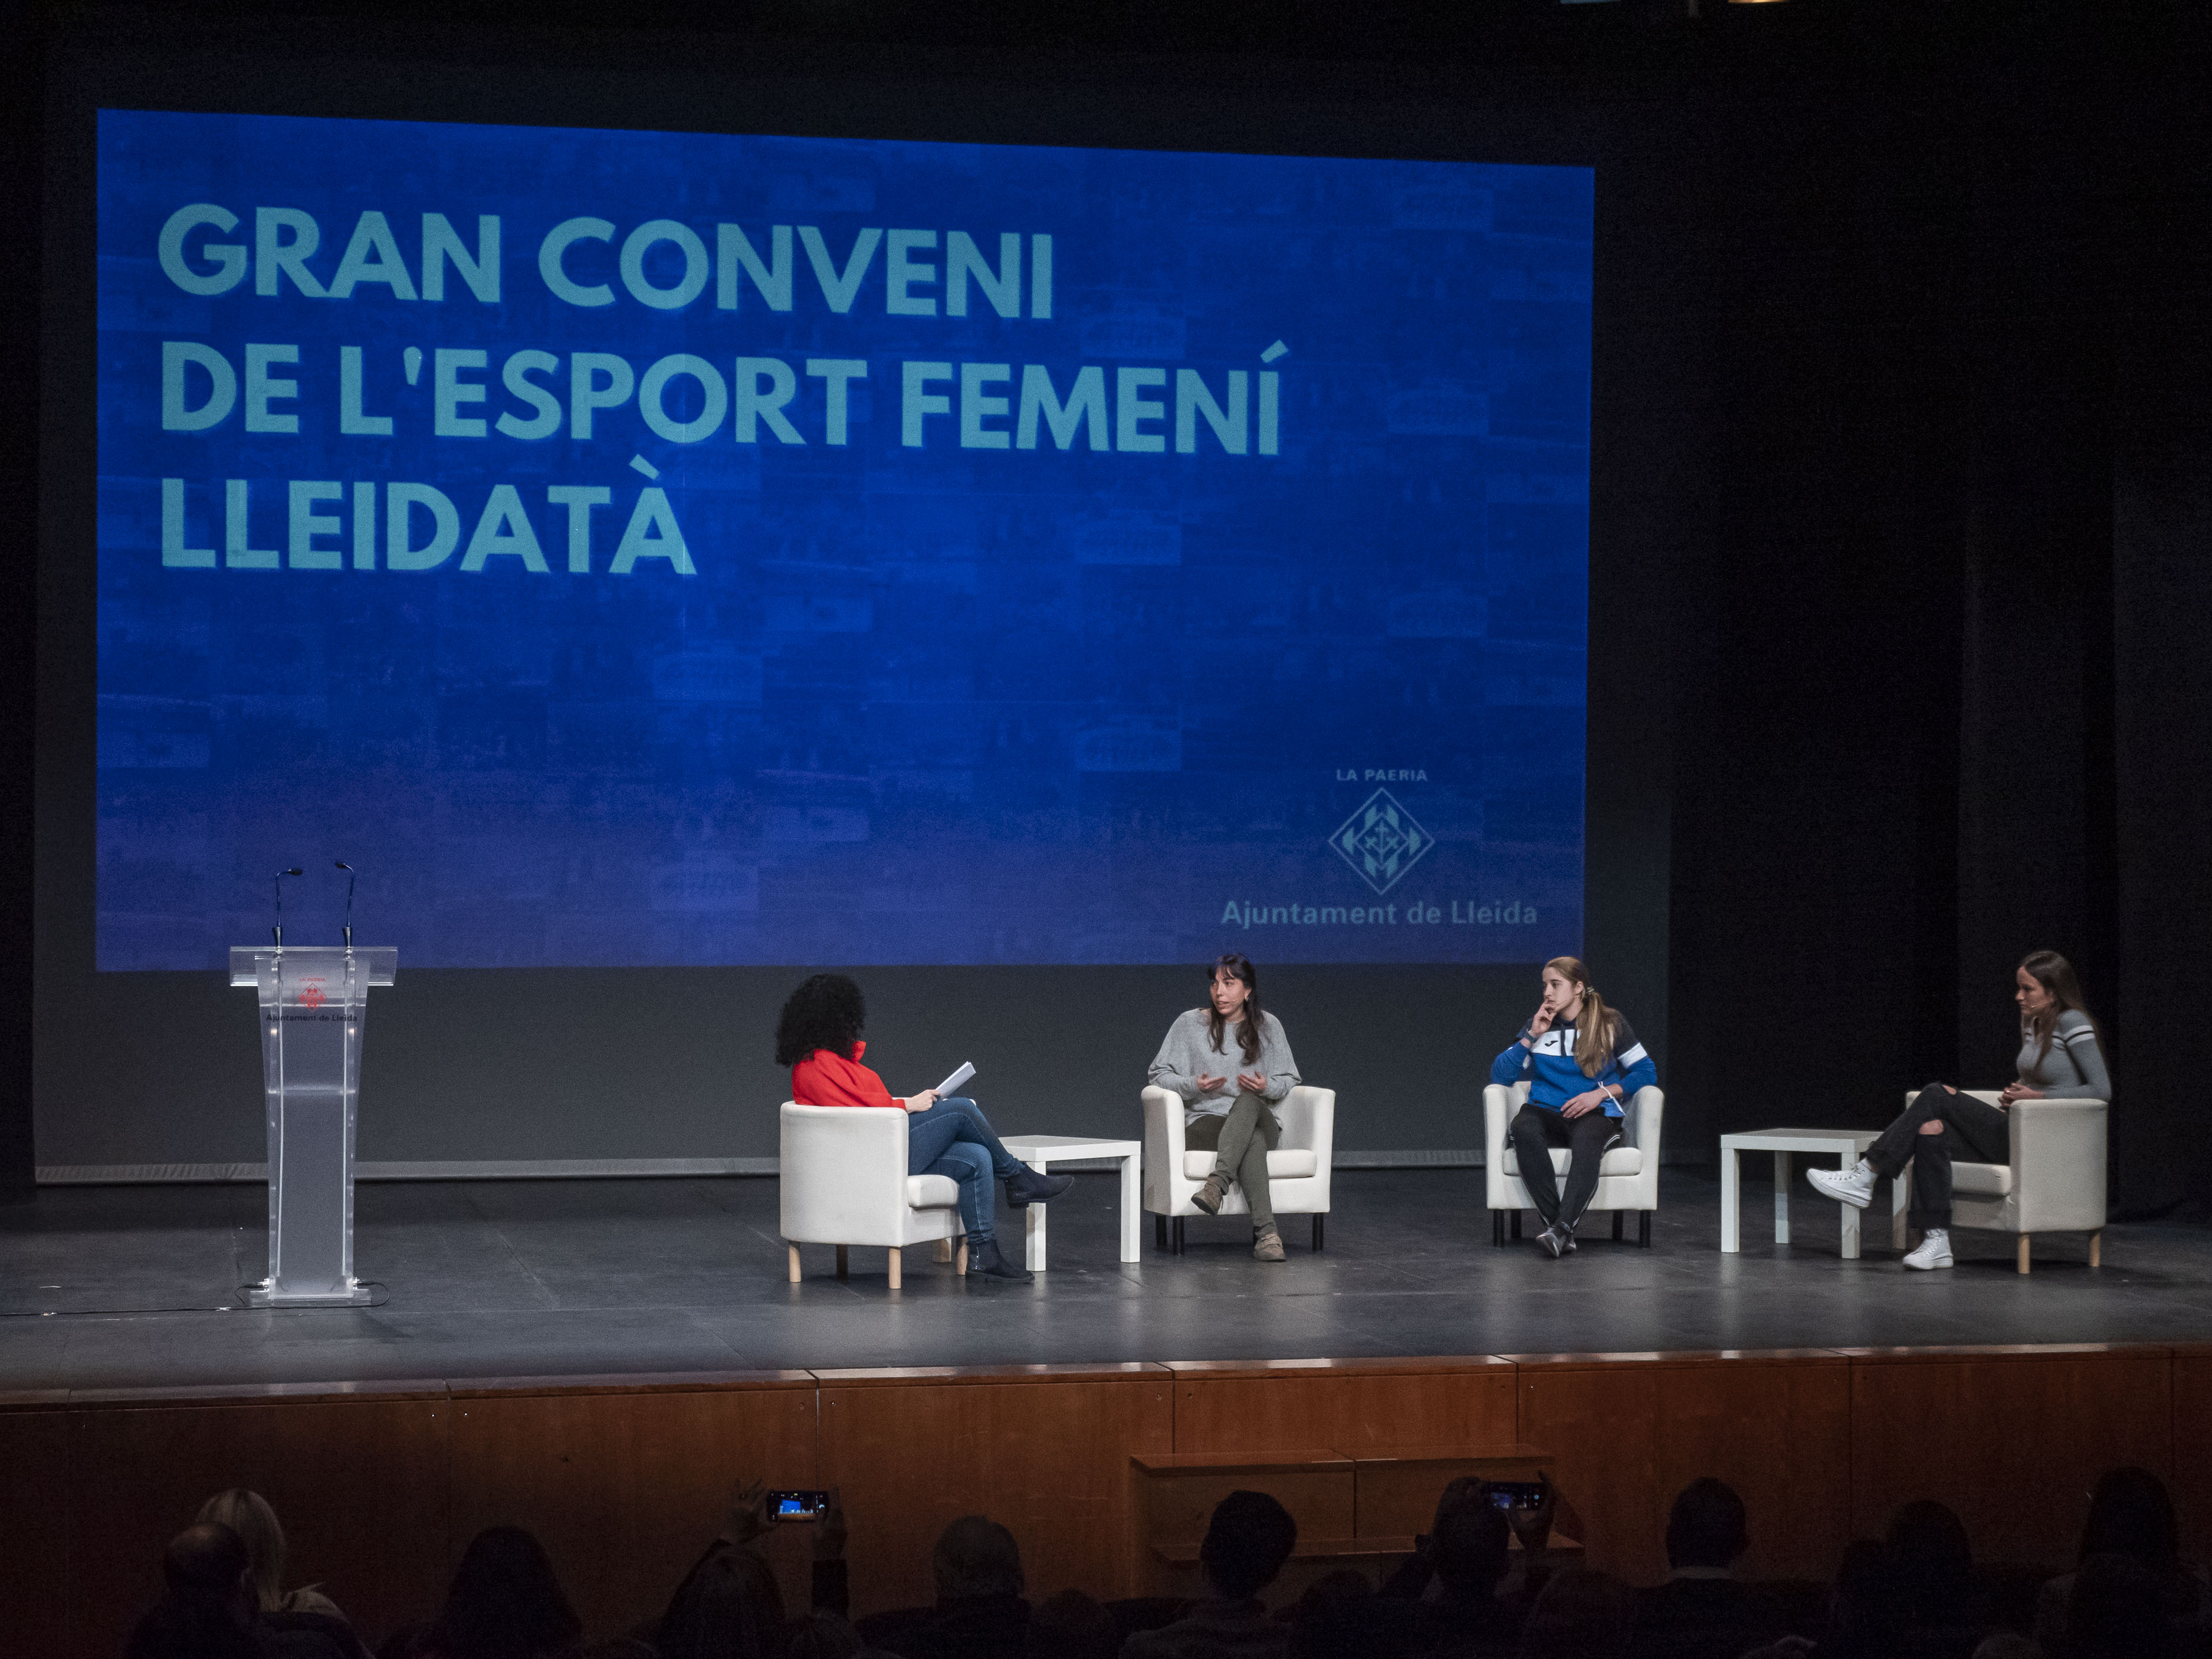 La periodista Eva Cortijo ha moderat la taula rodona amb esportistes de clubs lleidatans amb què ha començat l'acte del Gran Conveni de l'esport femení lleidatà.